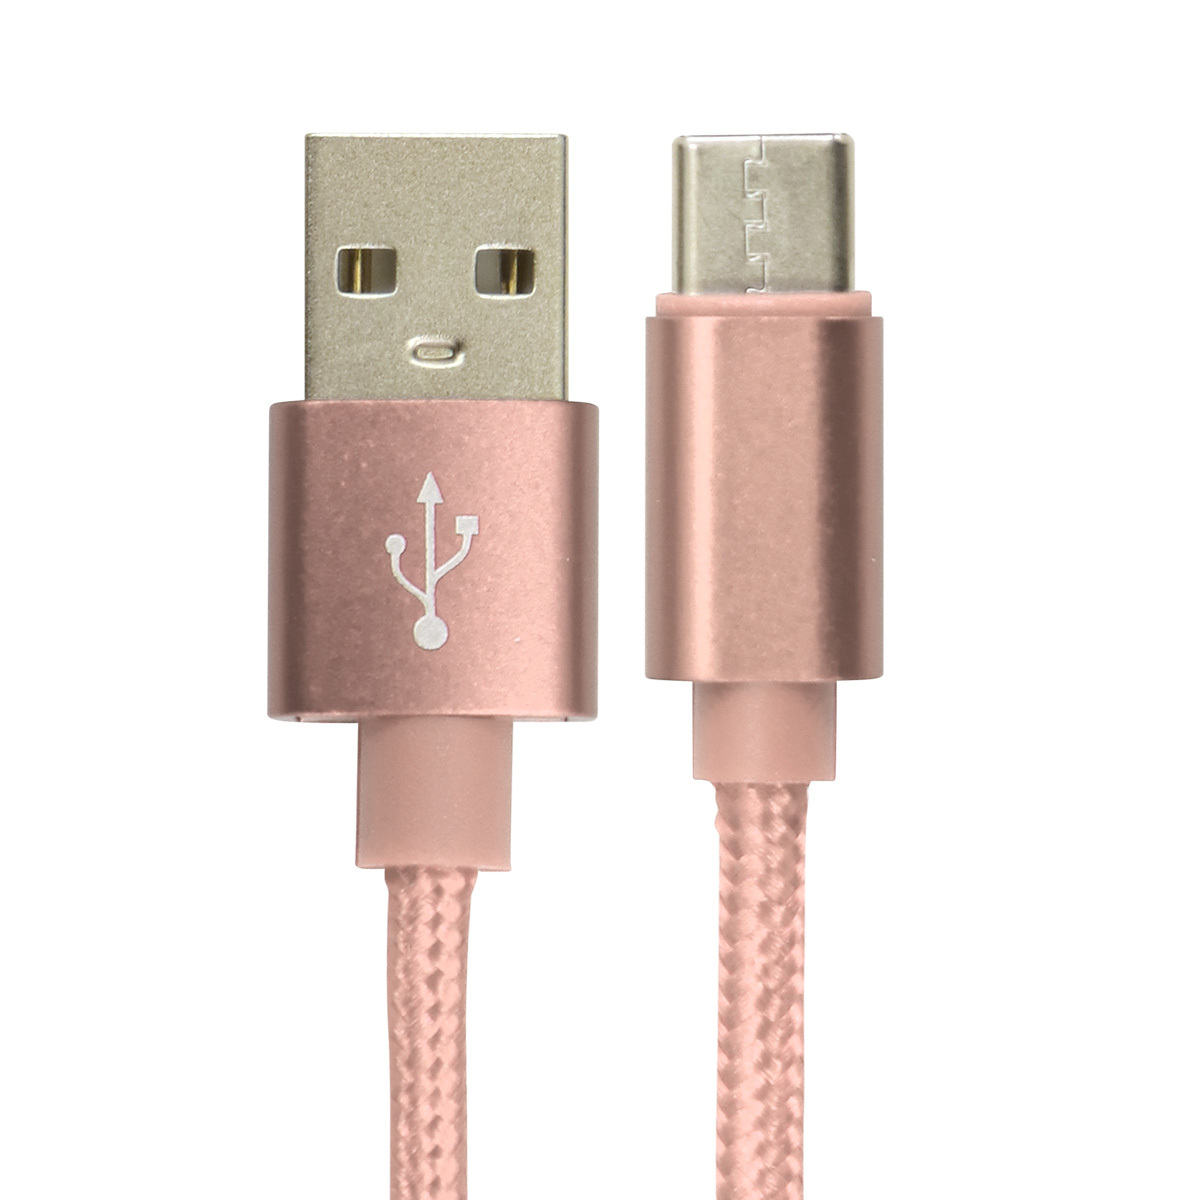 USB Type-C 充電ケーブル 長さ0.25m 0.5m 1m 1.5m 急速充電 iPhone 強化素材 データ転送 type-c Android USB ケーブル タイプC 充電 コード 充電器